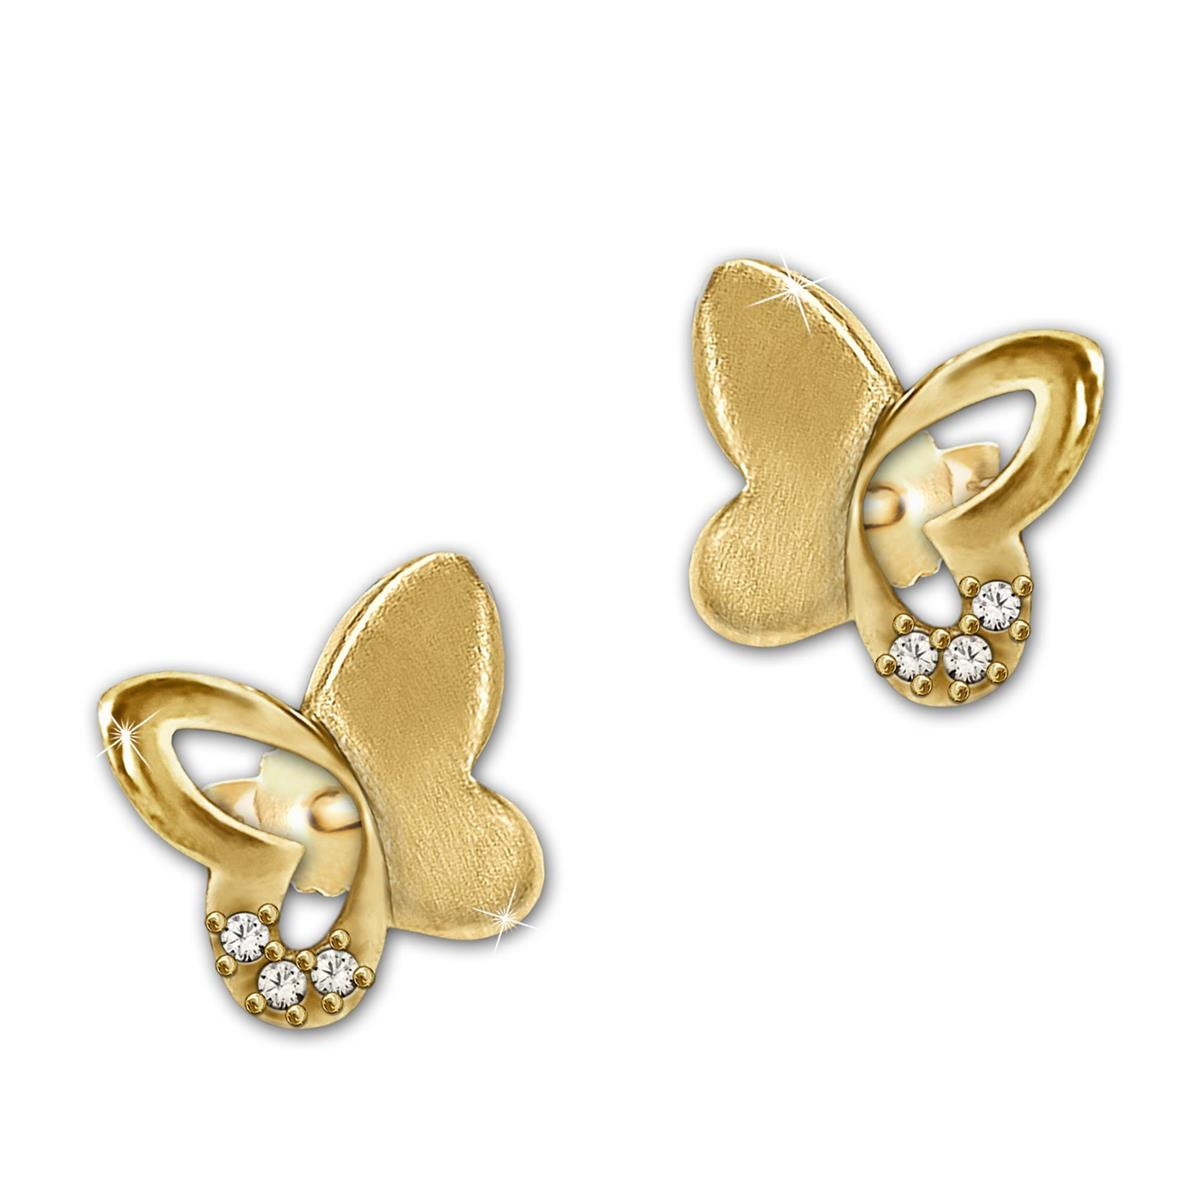 Gold Ohrringe als Stecker Schmetterlinge 7 mm halb matt glänzend mit Zirkoniastein 333 Gelbgold 8 Karat